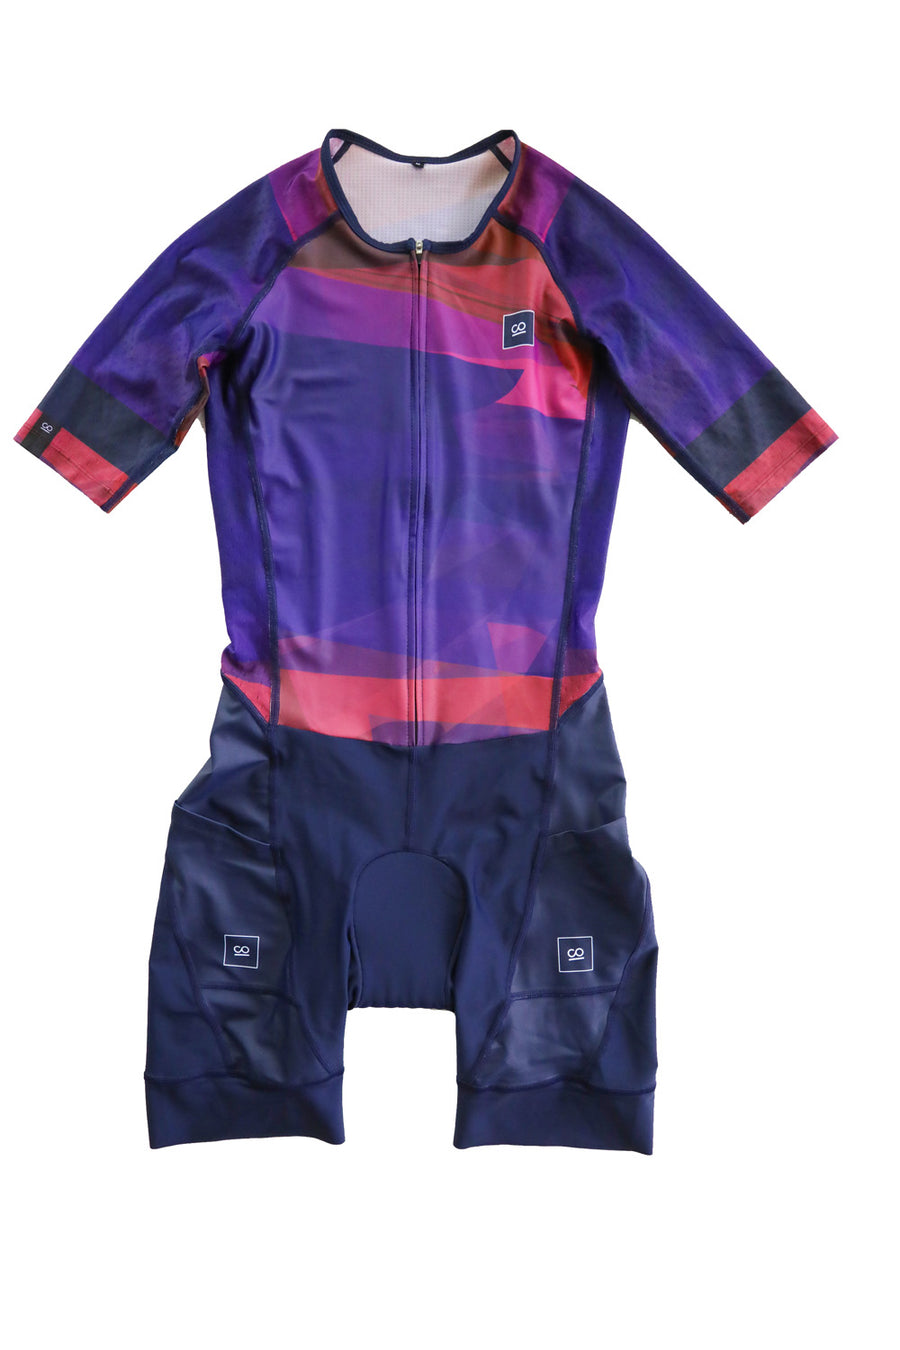 Leuk vinden Zinloos En Men's Triathlon Suits | Tri Suit Kits, Apparel & Gear For Men